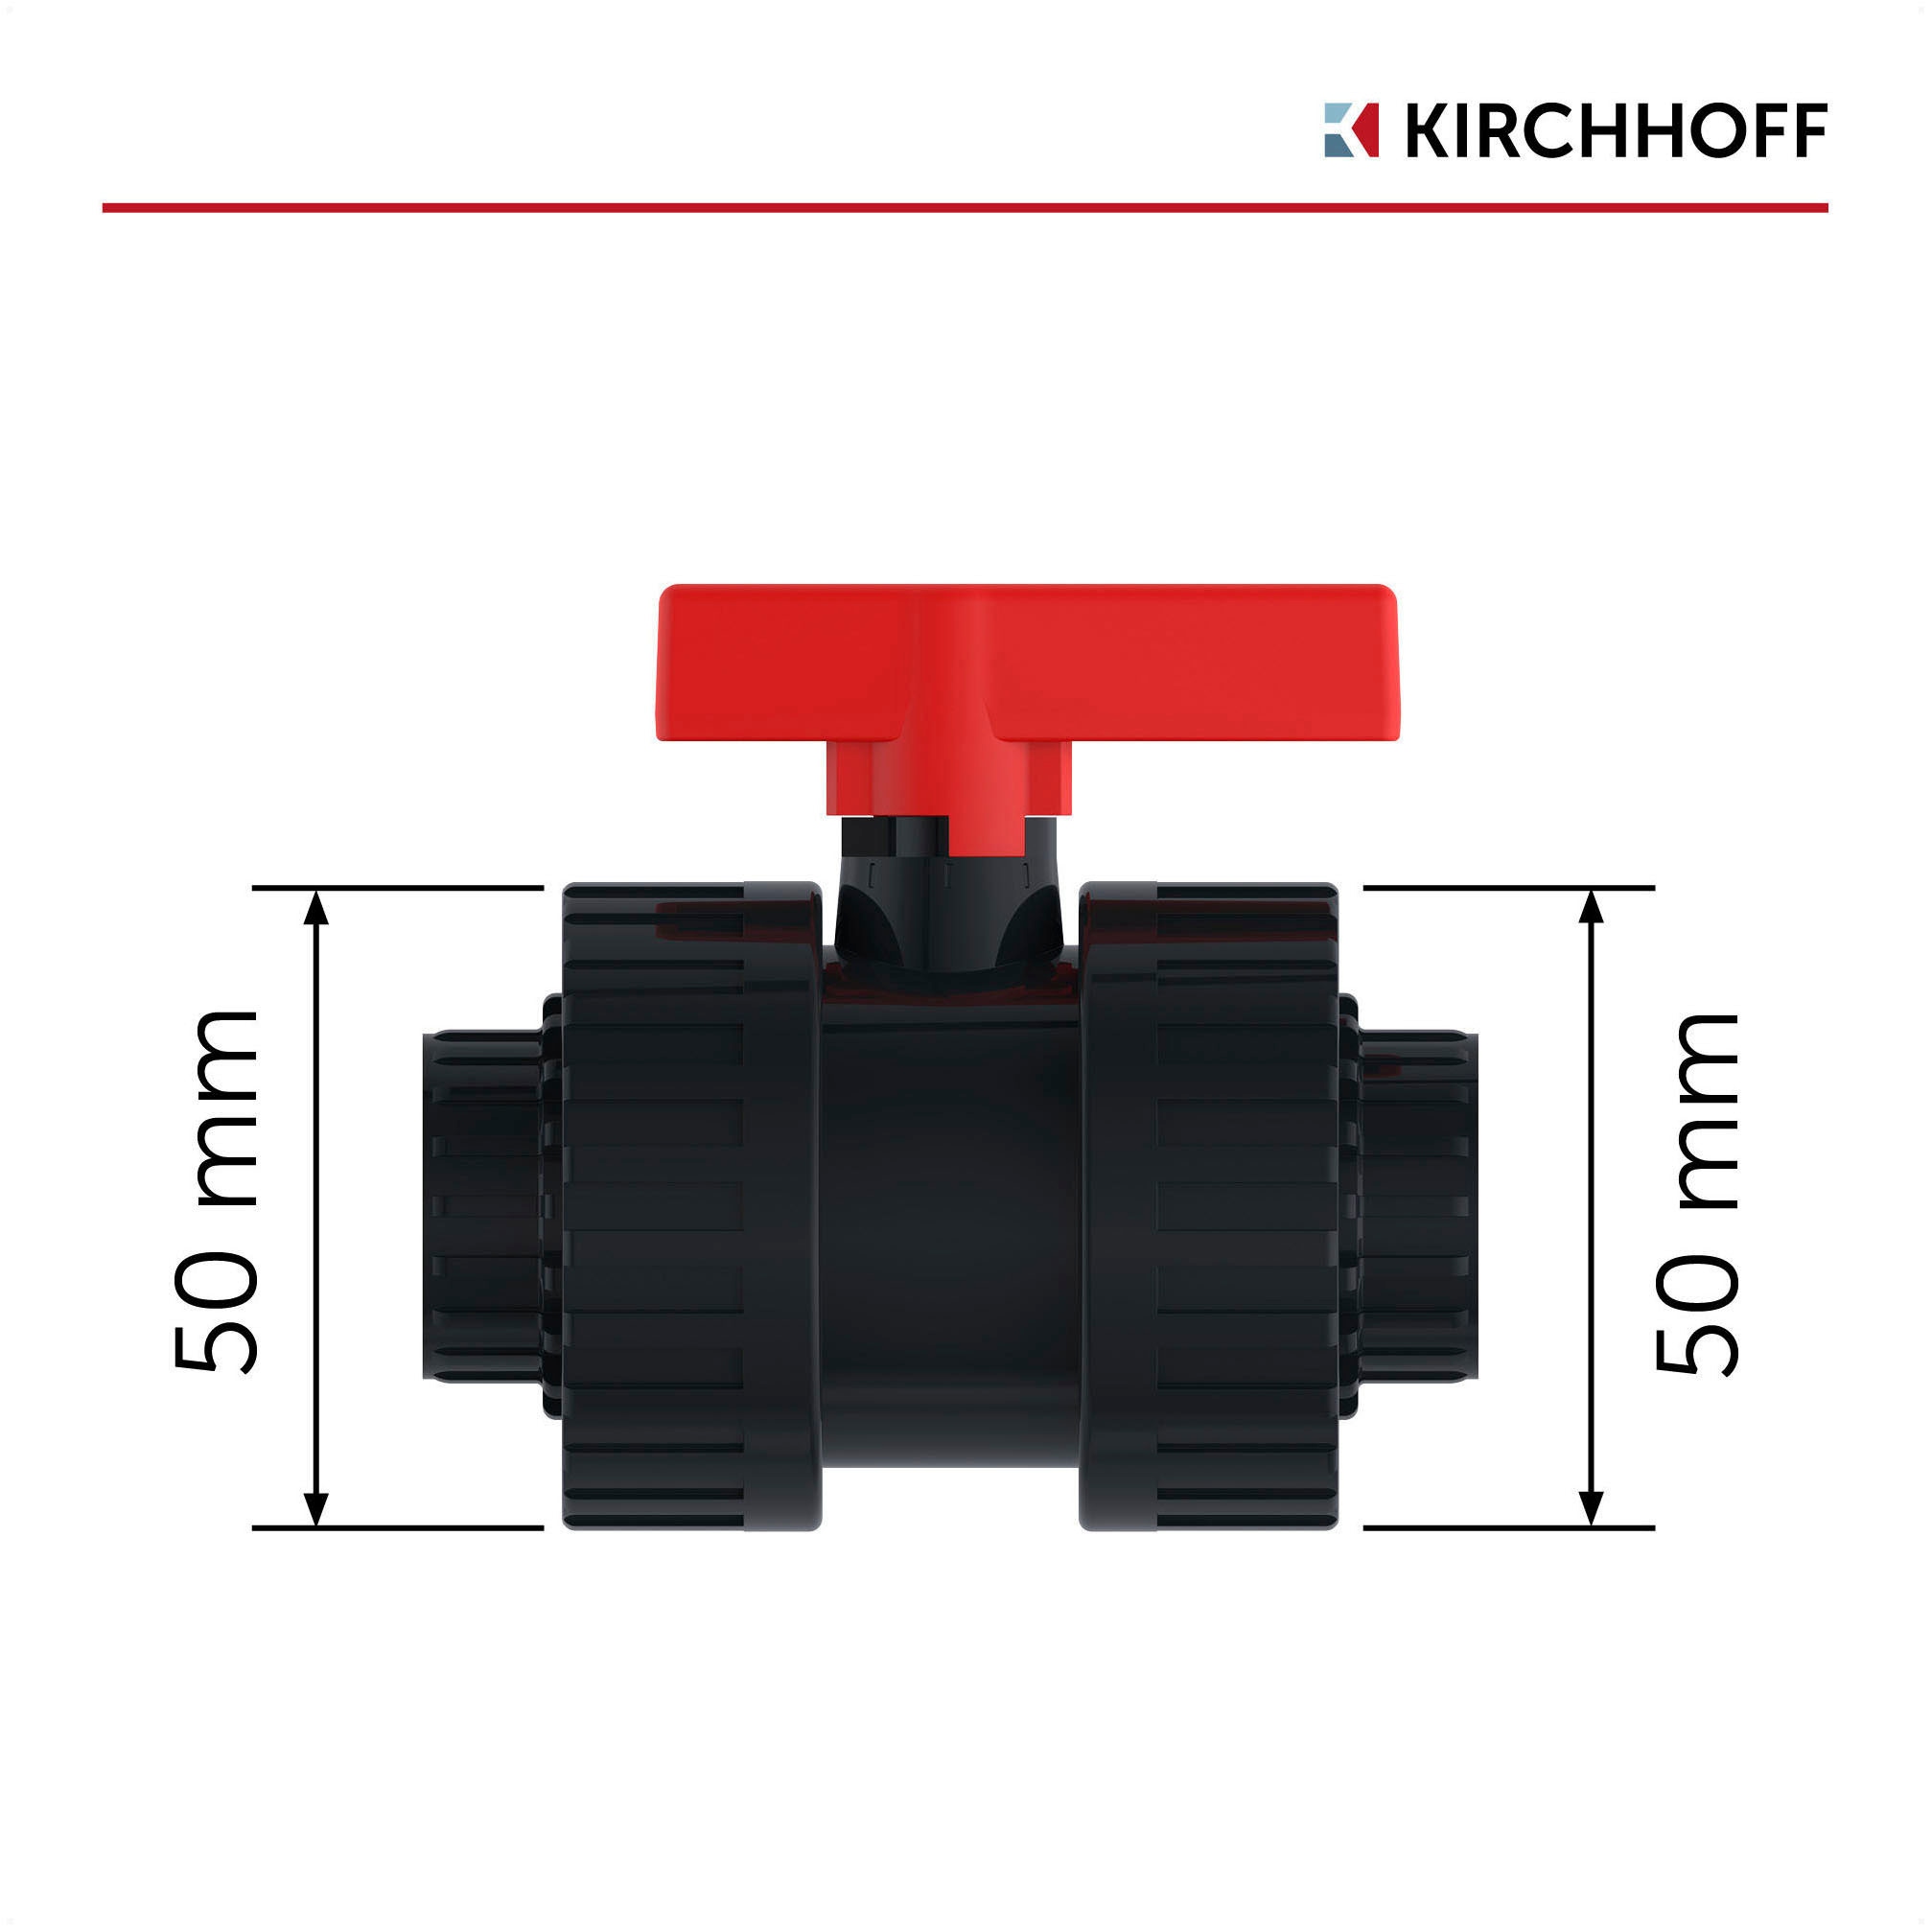 Kirchhoff Kugelhahn »PVC-Druckrohr für Pool, Teich, PN 12,5«, besonders beständig